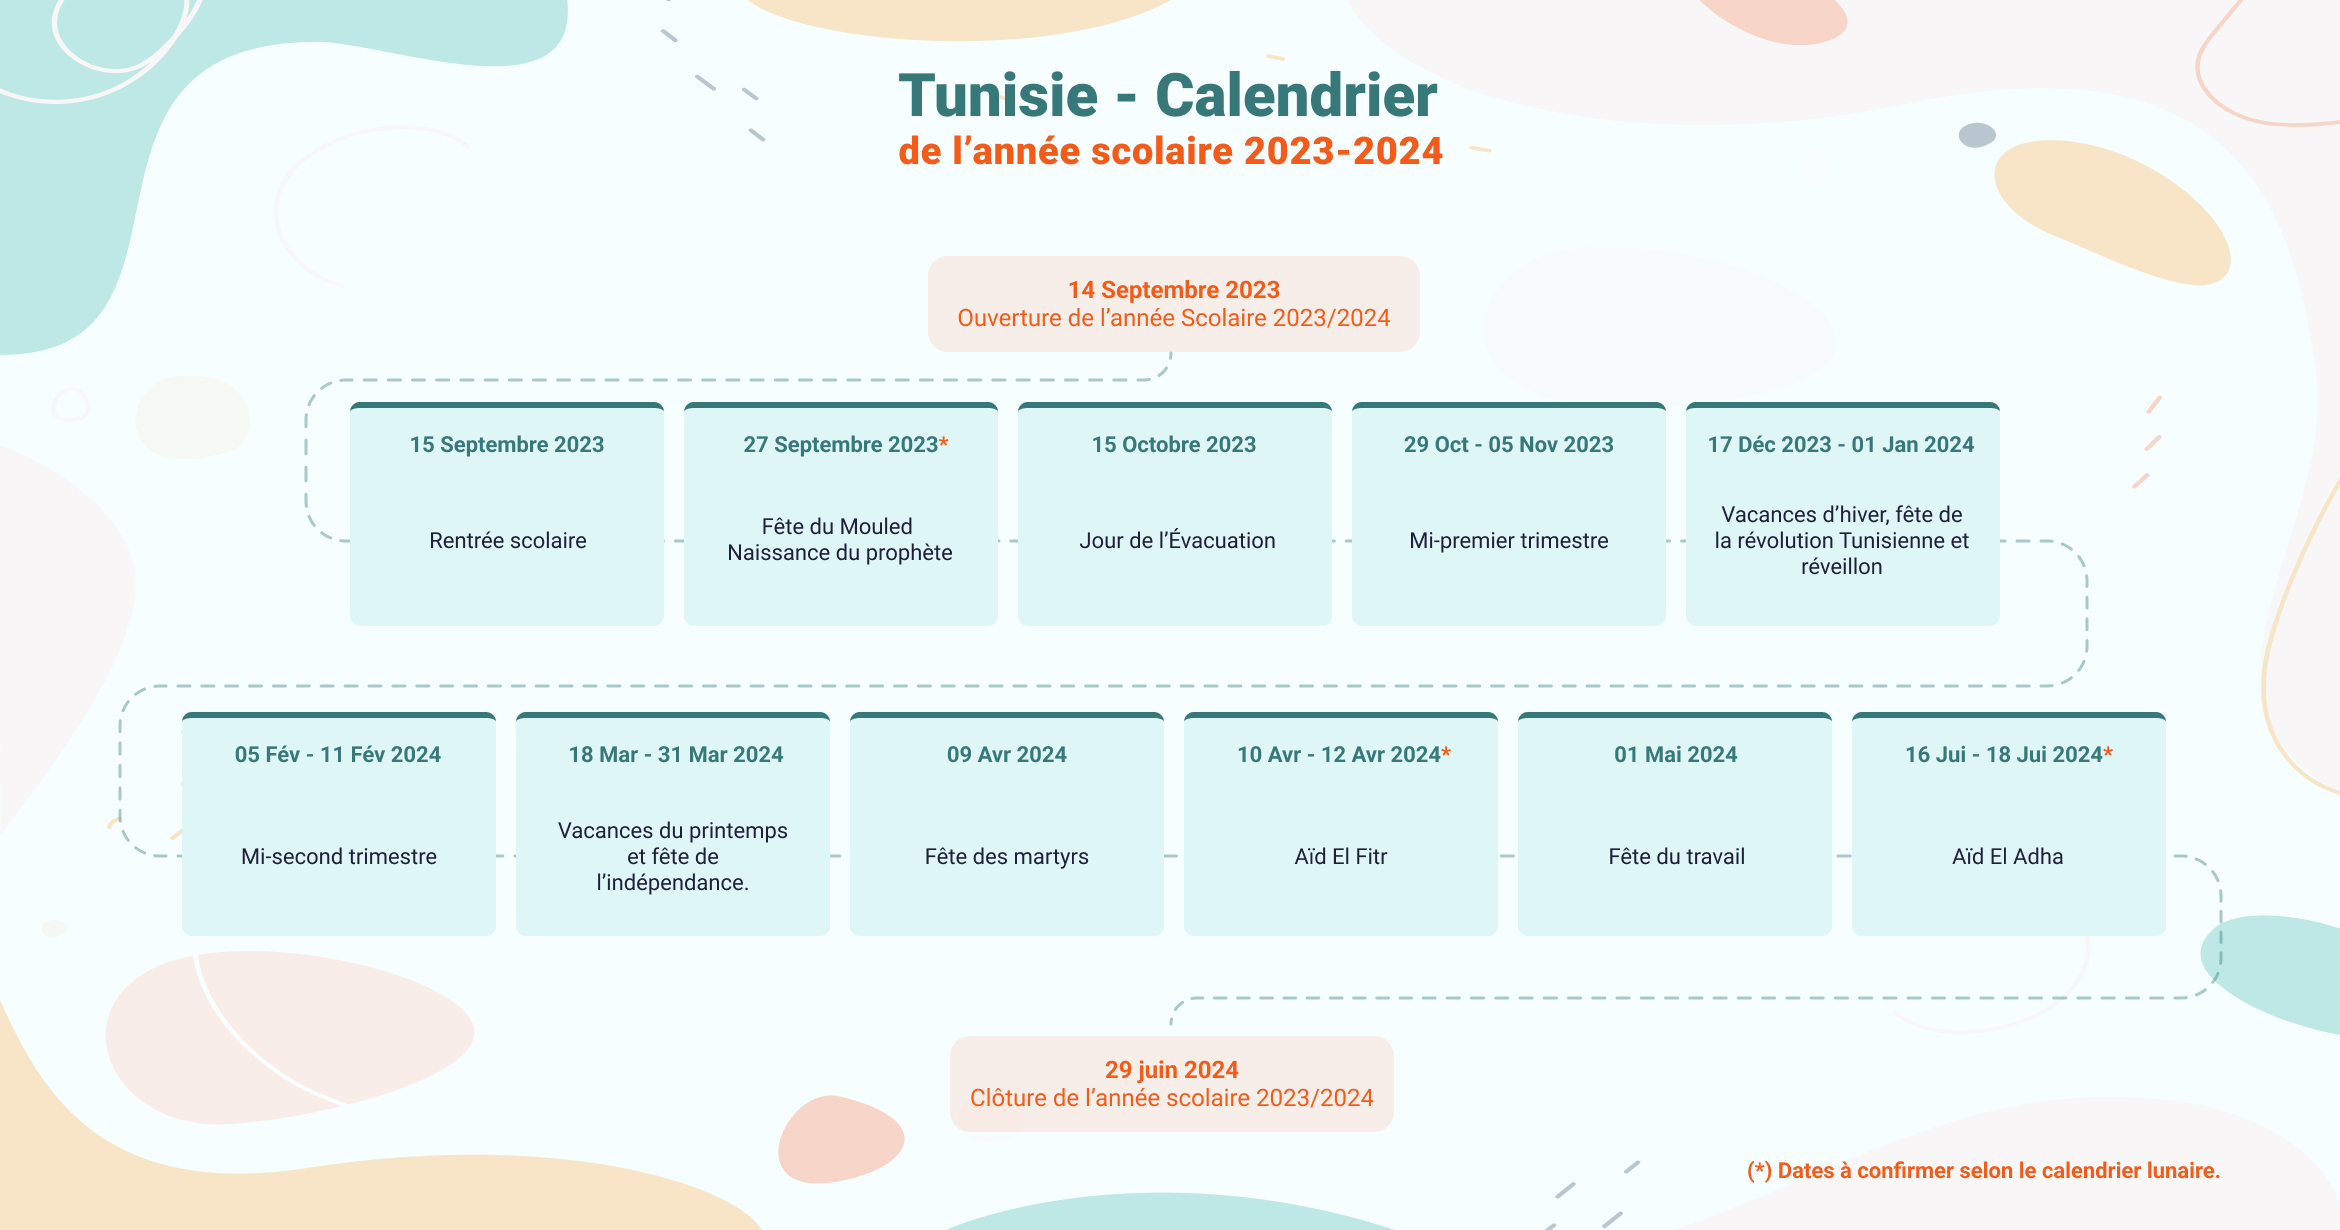 Tunisie Calendrier de l’année scolaire 2023/2024